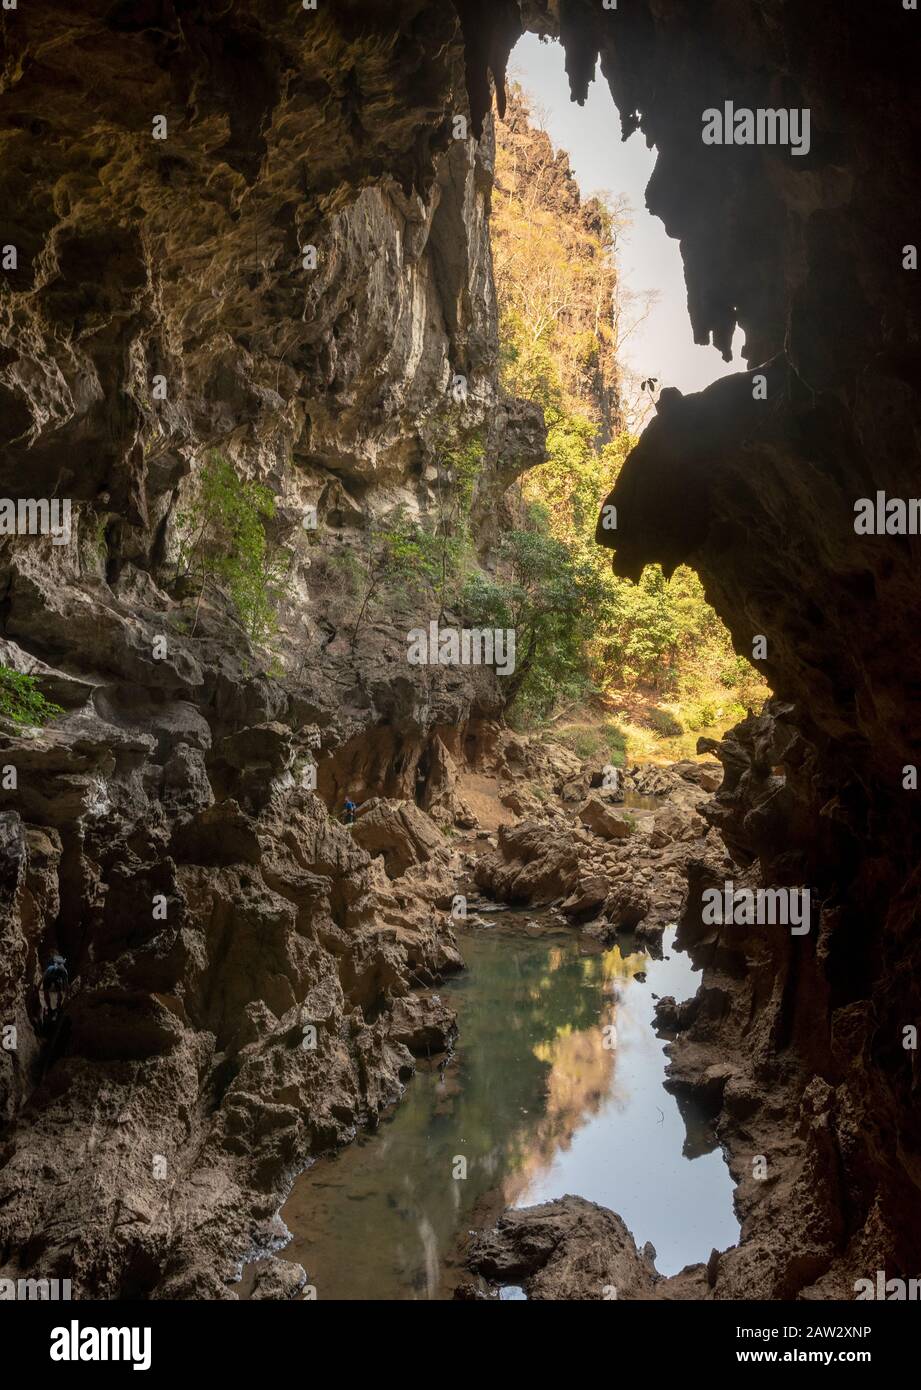 Grotte de Xieng Liap et eau de source, boucle de Thakhek, Laos Banque D'Images